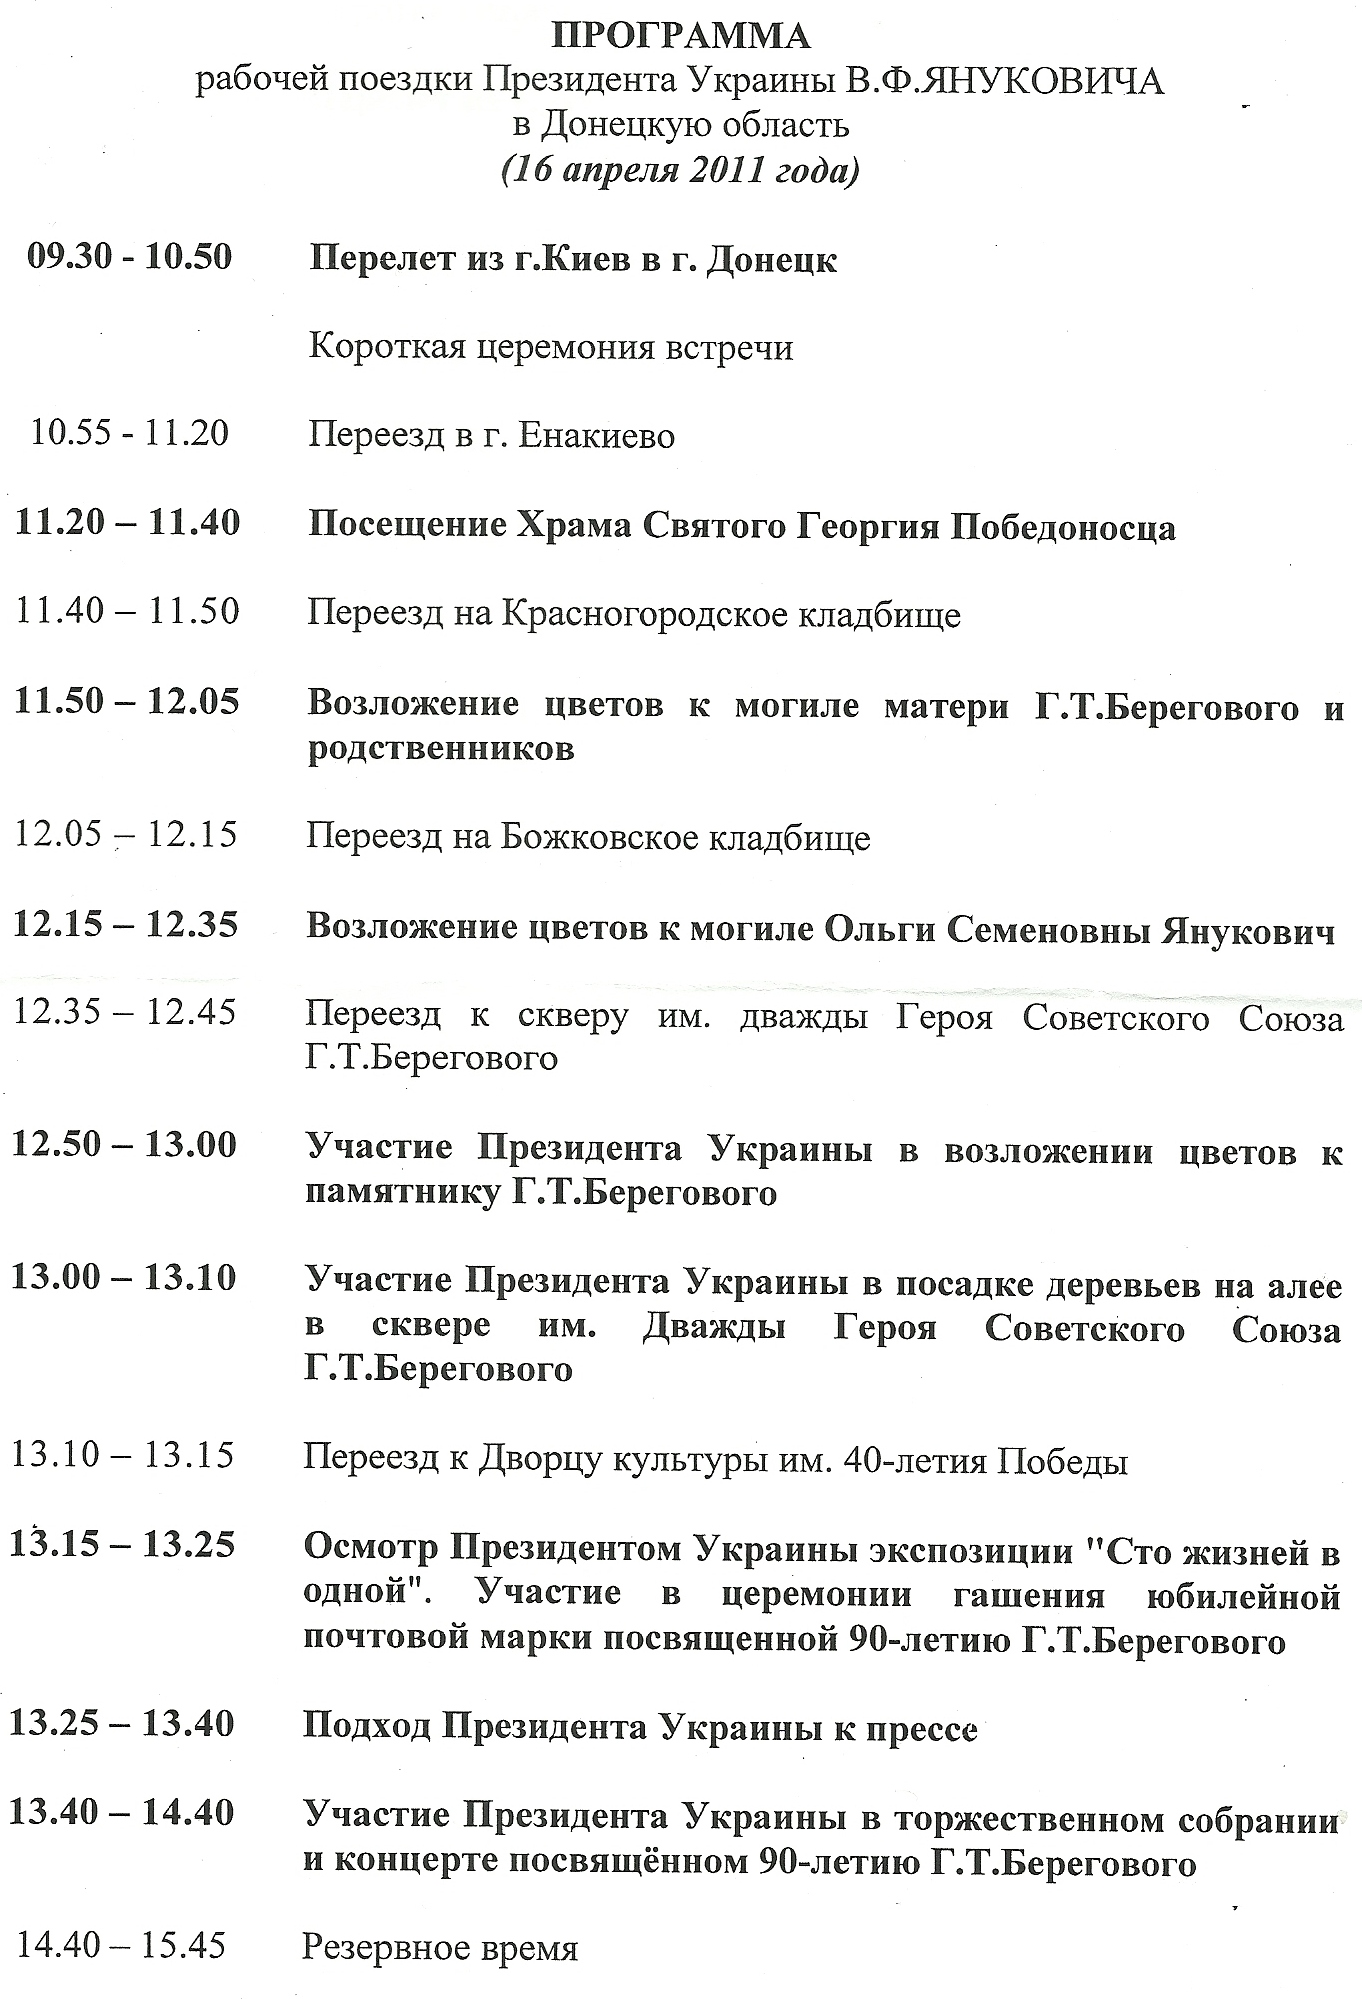 Программа рабочей поездки Президента Украины В.Ф.Януковича в город Енакиево